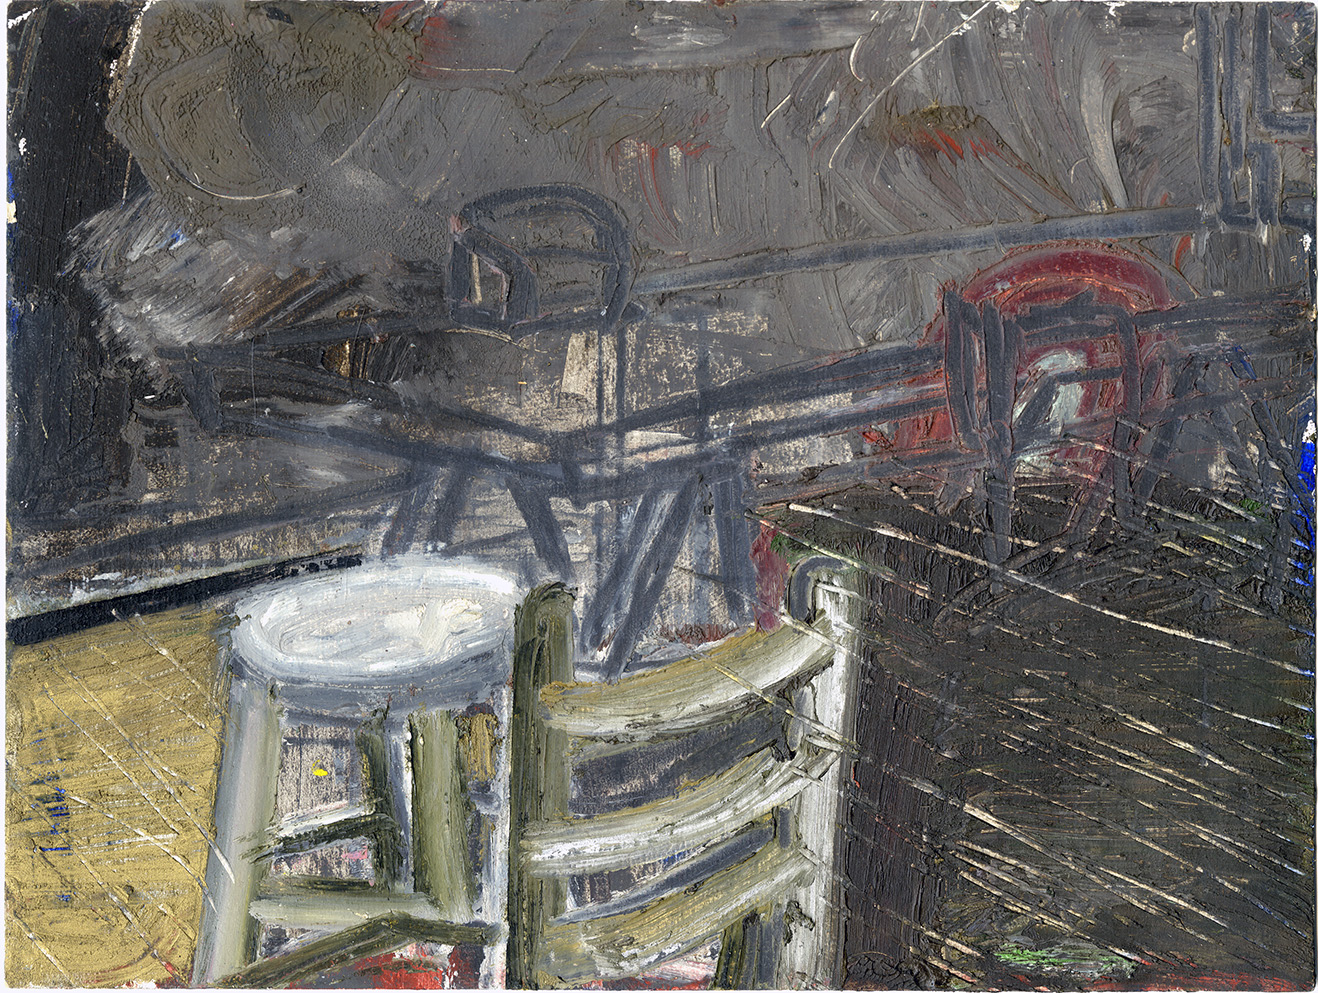   Interior No. 15 (1997)  